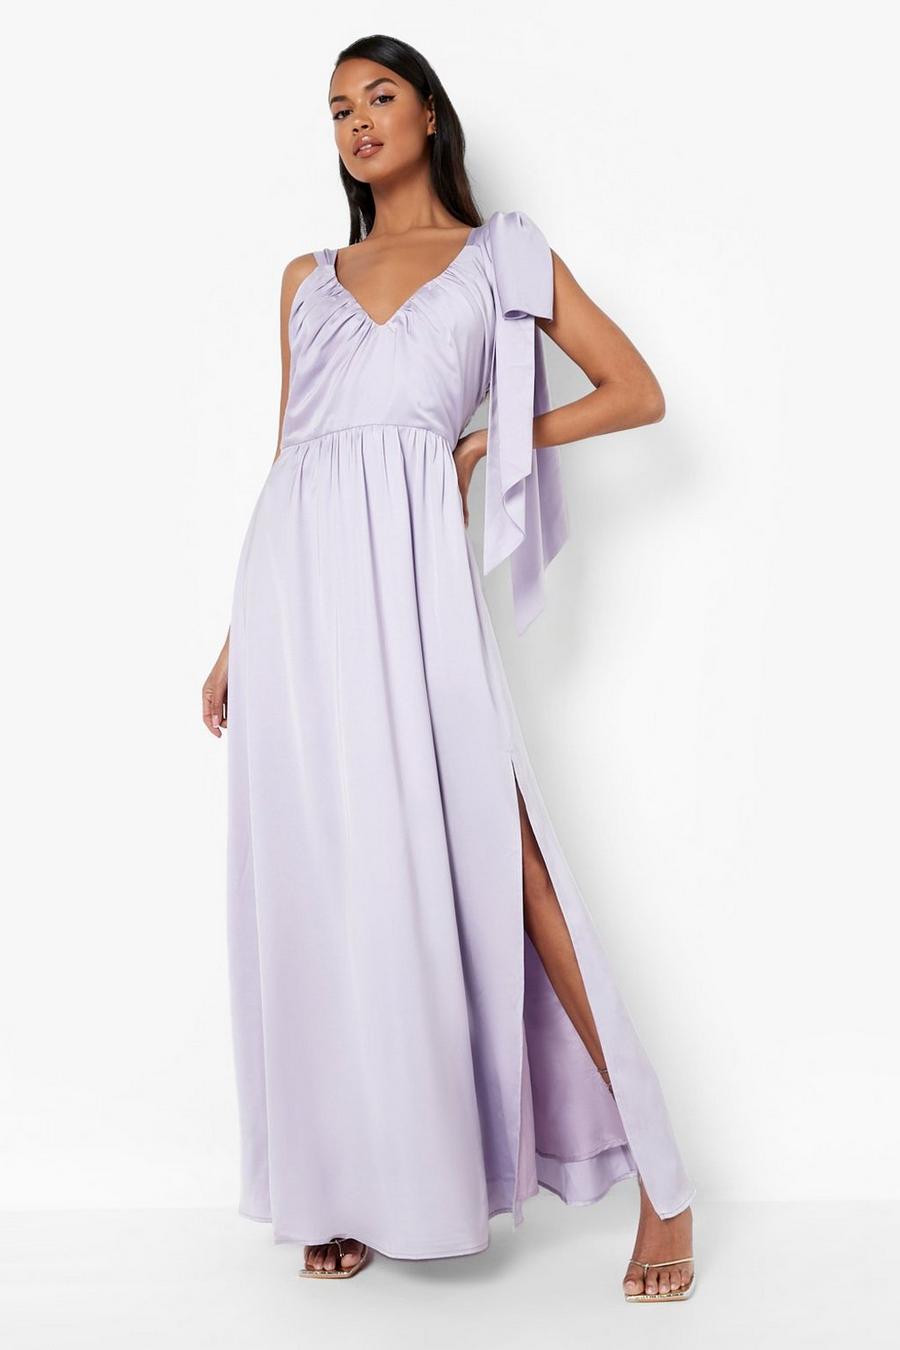 https://media.boohoo.com/i/boohoo/gzz02206_lilac_xl/female-lilac-tie-shoulder-detail-drape-maxi-dress/?w=900&qlt=default&fmt.jp2.qlt=70&fmt=auto&sm=fit